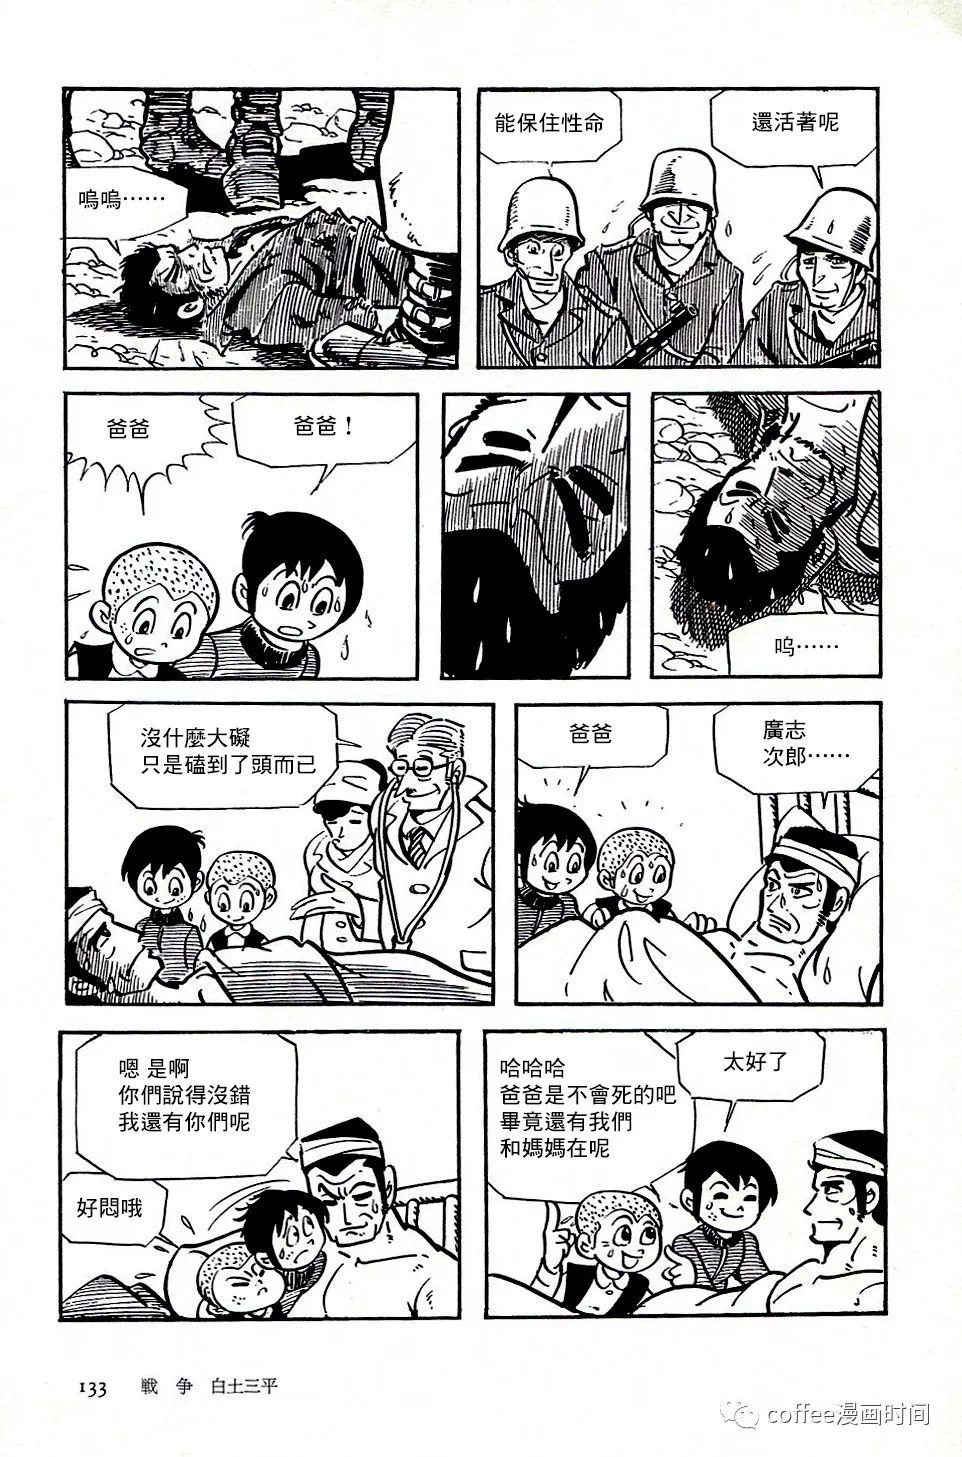 日本短篇漫畫傑作集 - 白土三平《戰爭》 - 2